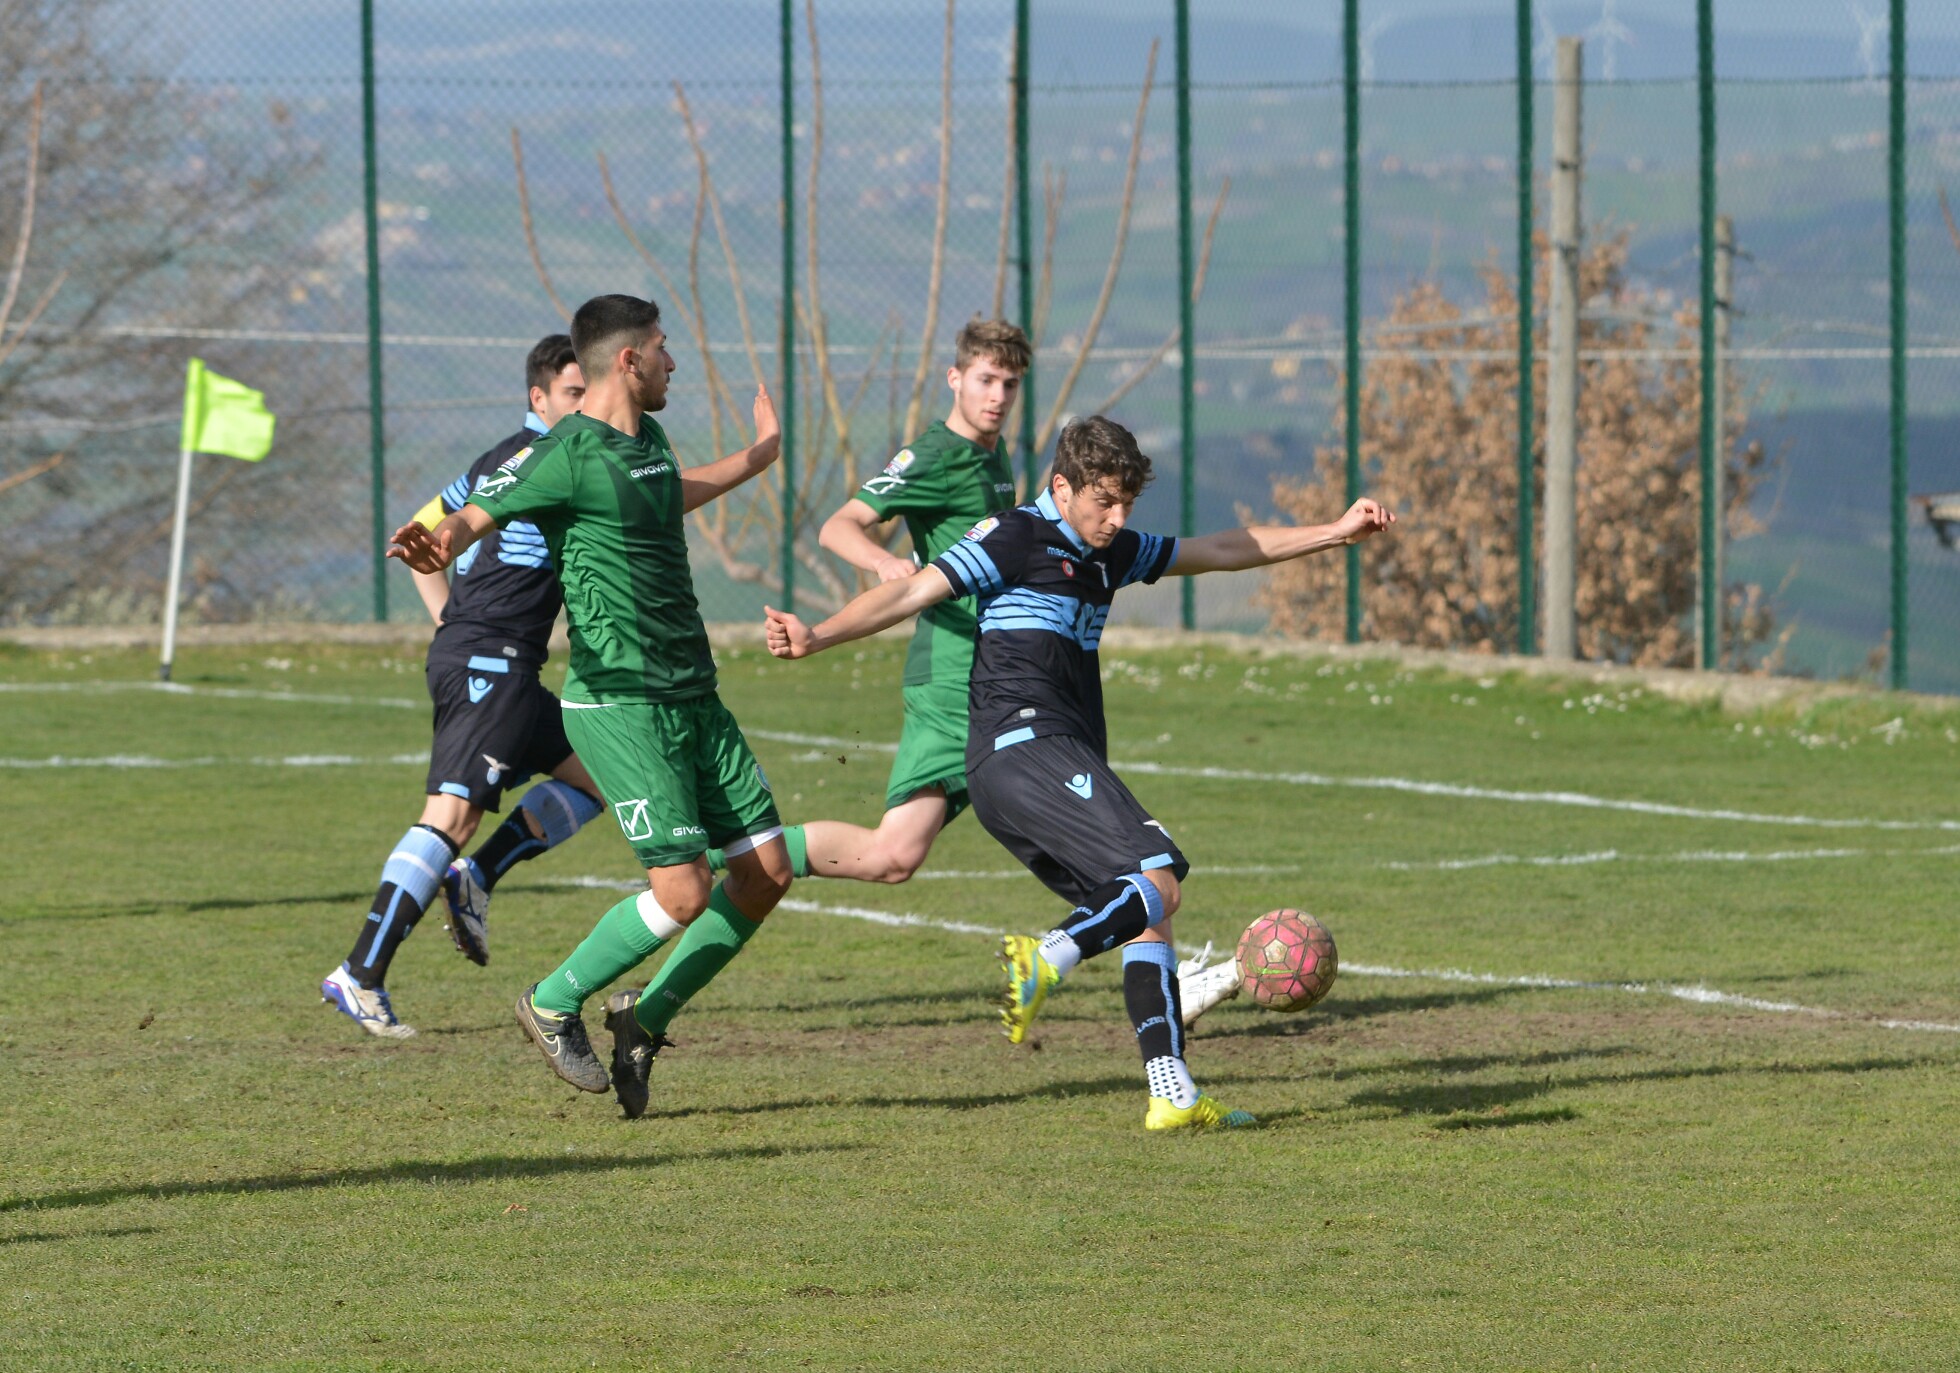 Primavera, Avellino-Lazio 0-3: il fotoservizio in anteprima firmato Fraioli & Proietto